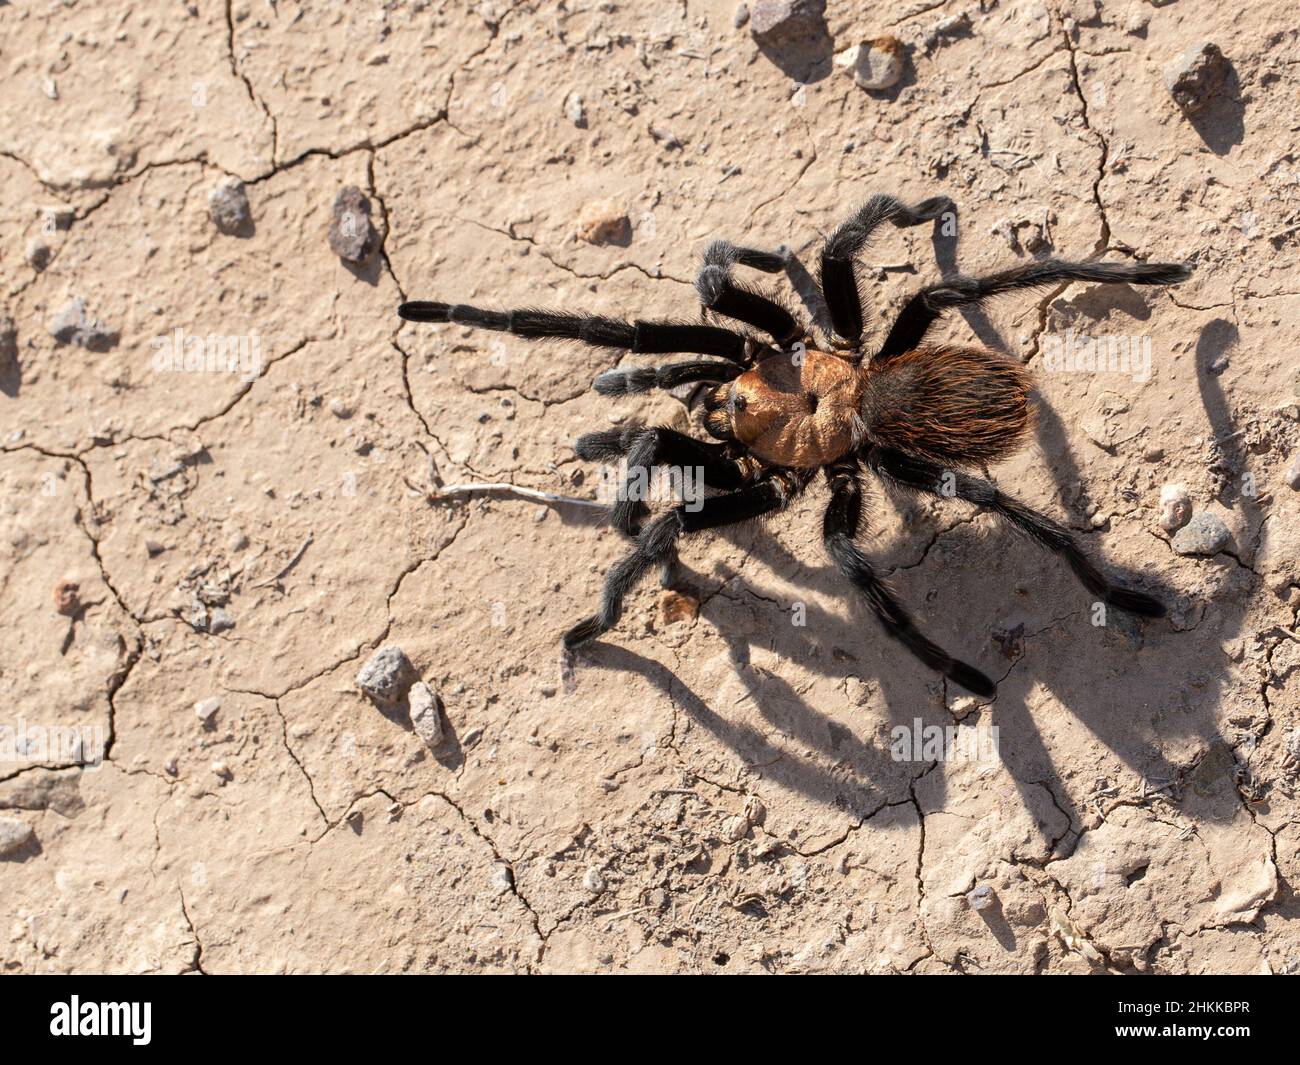 Une Tarantula brune du Texas traverse le sol du désert de Chihuahuan. Banque D'Images